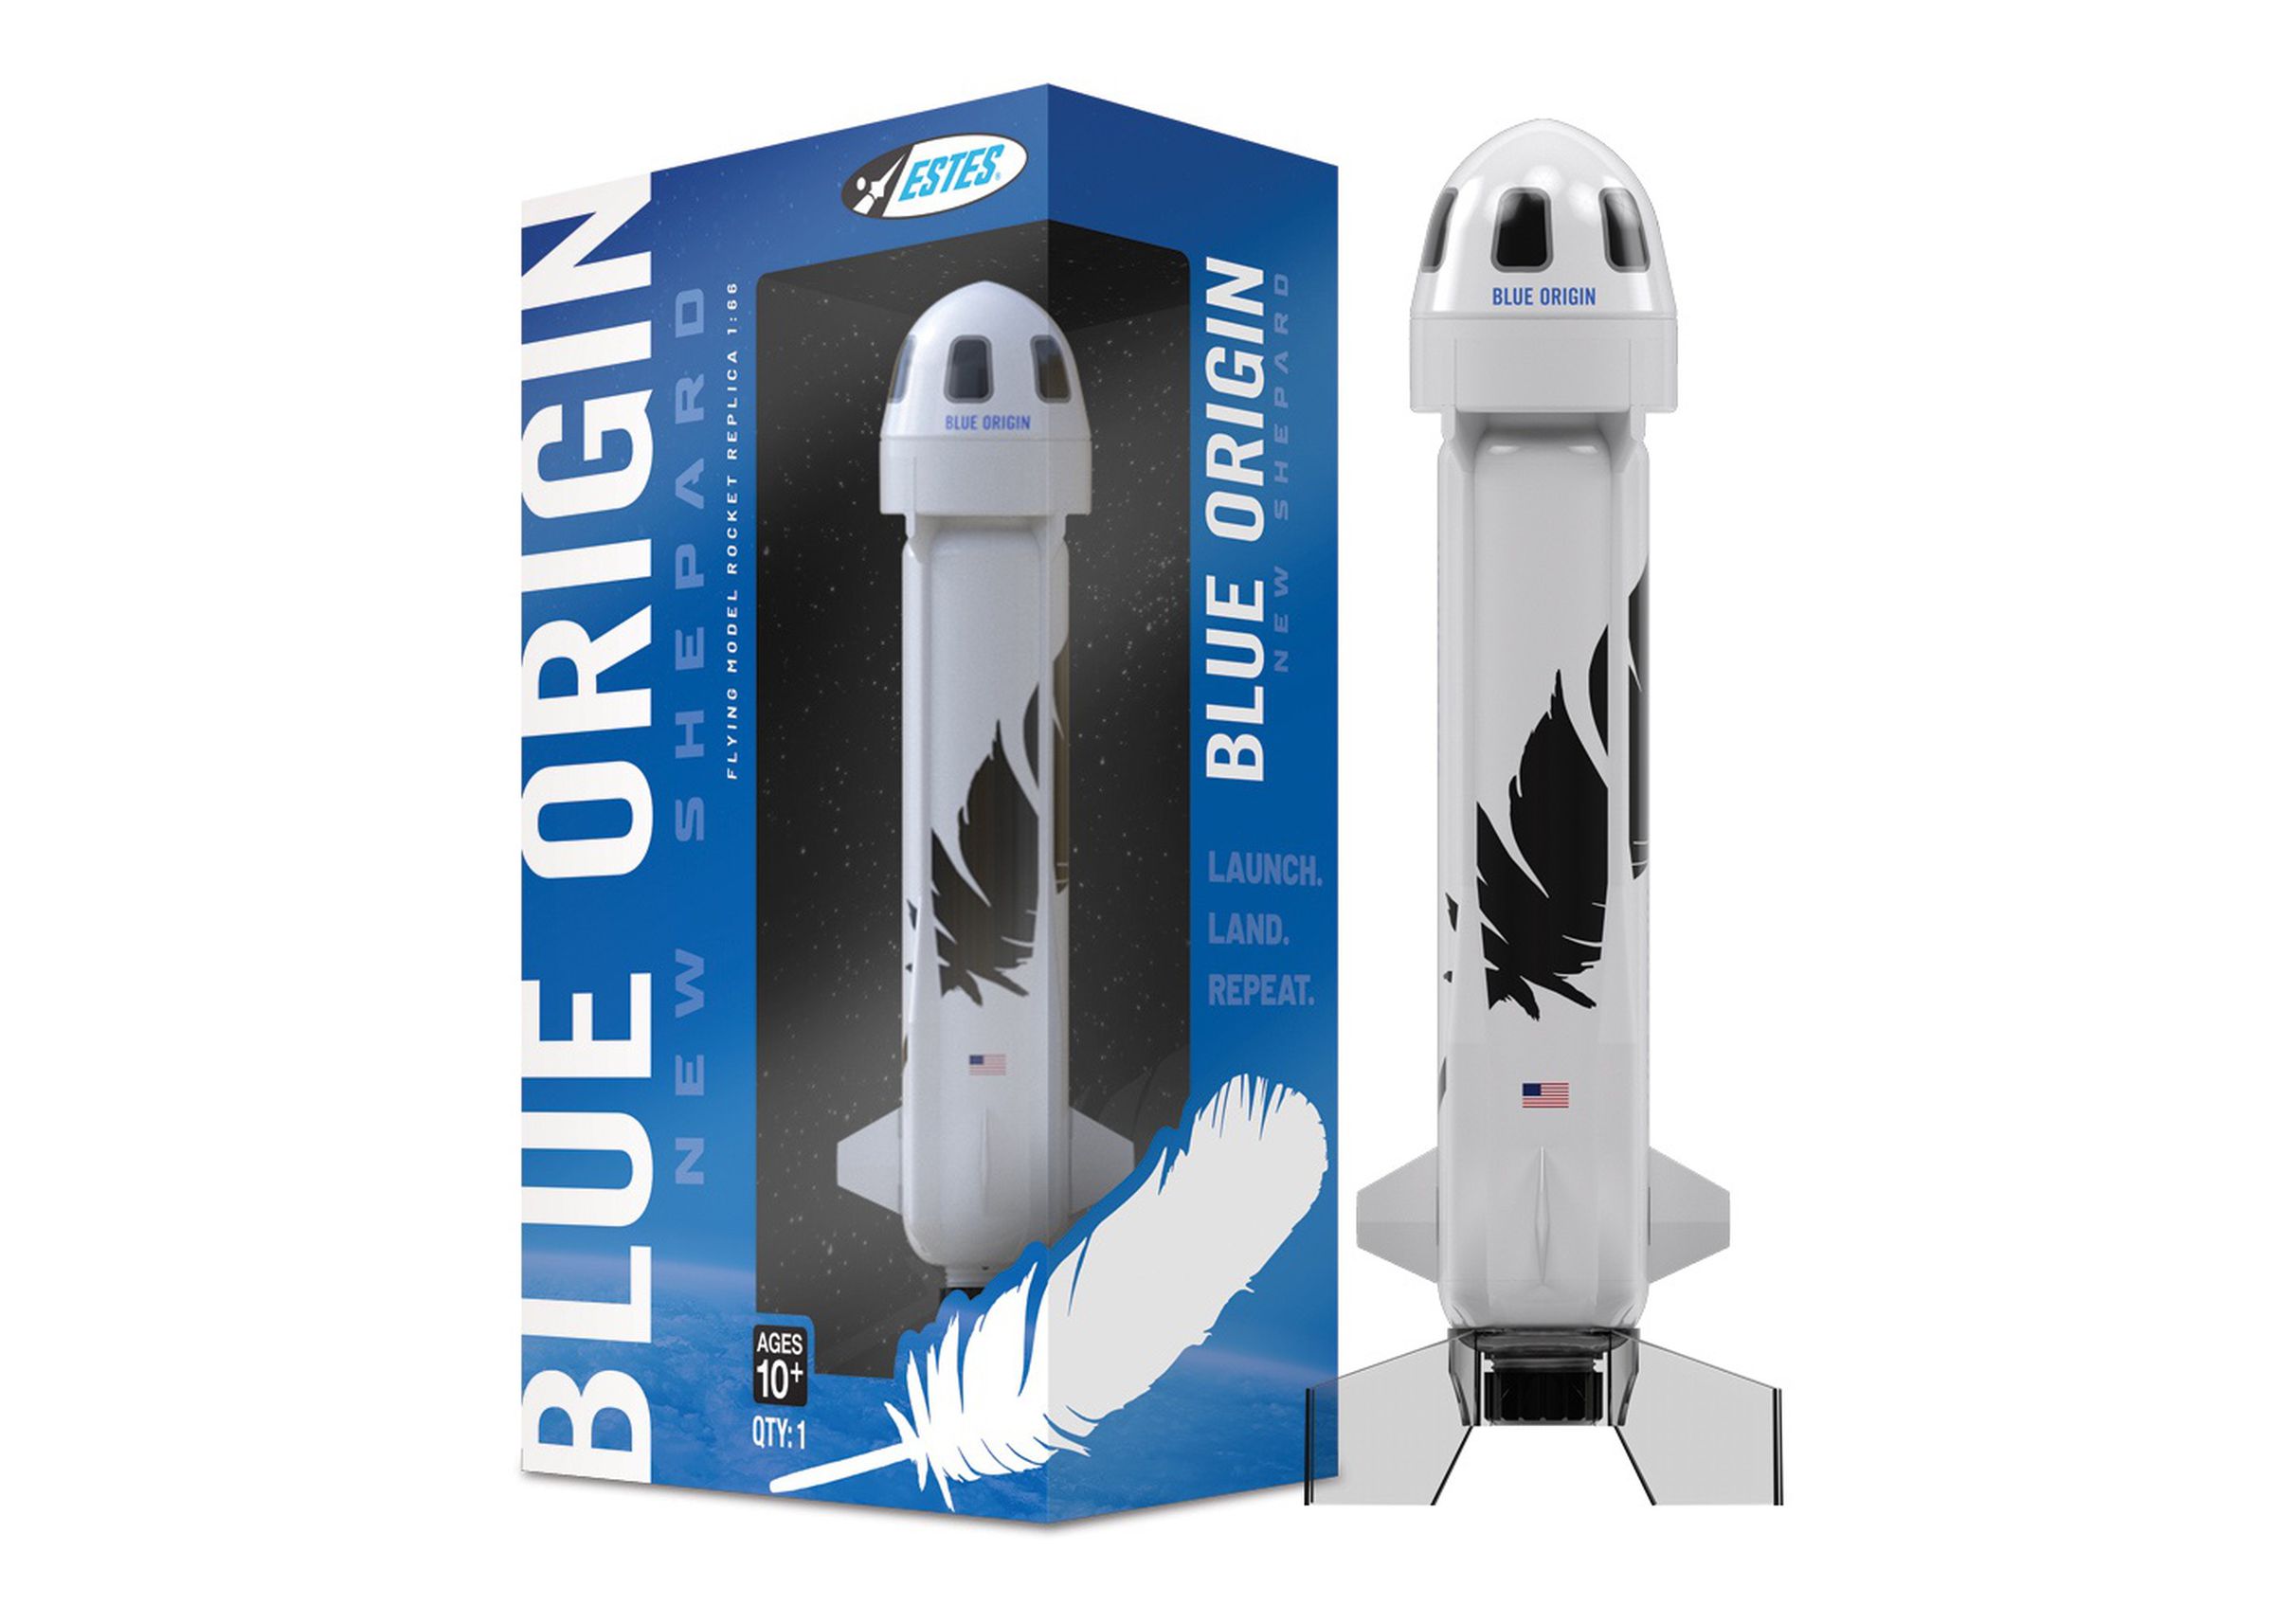 The Blue Origin New Shephard rocket model: yours for $69.99.